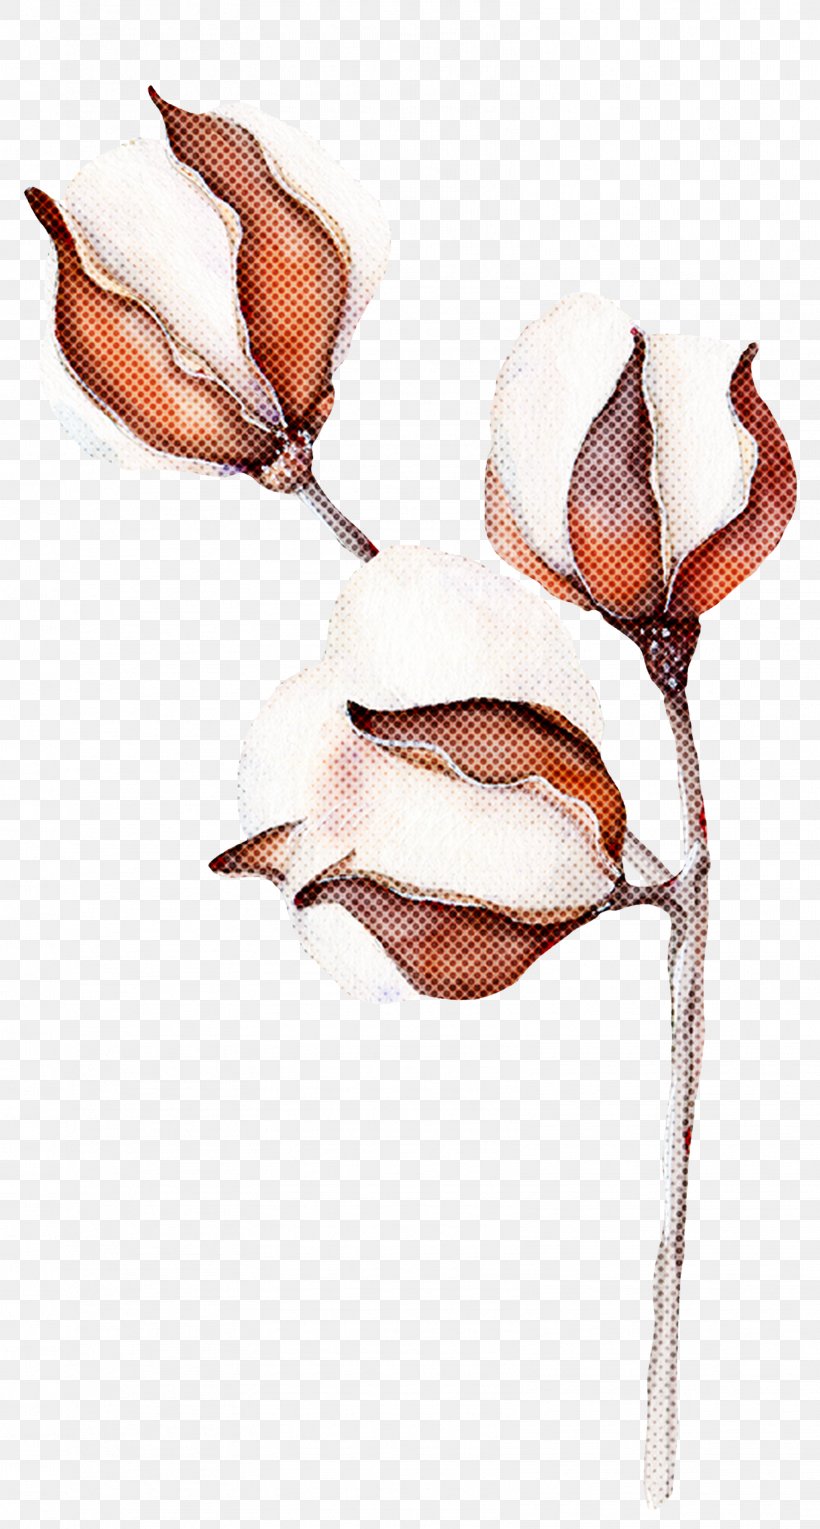 Plant Branch Flower Magnolia, PNG, 1608x3000px, Plant, Branch, Flower, Magnolia Download Free